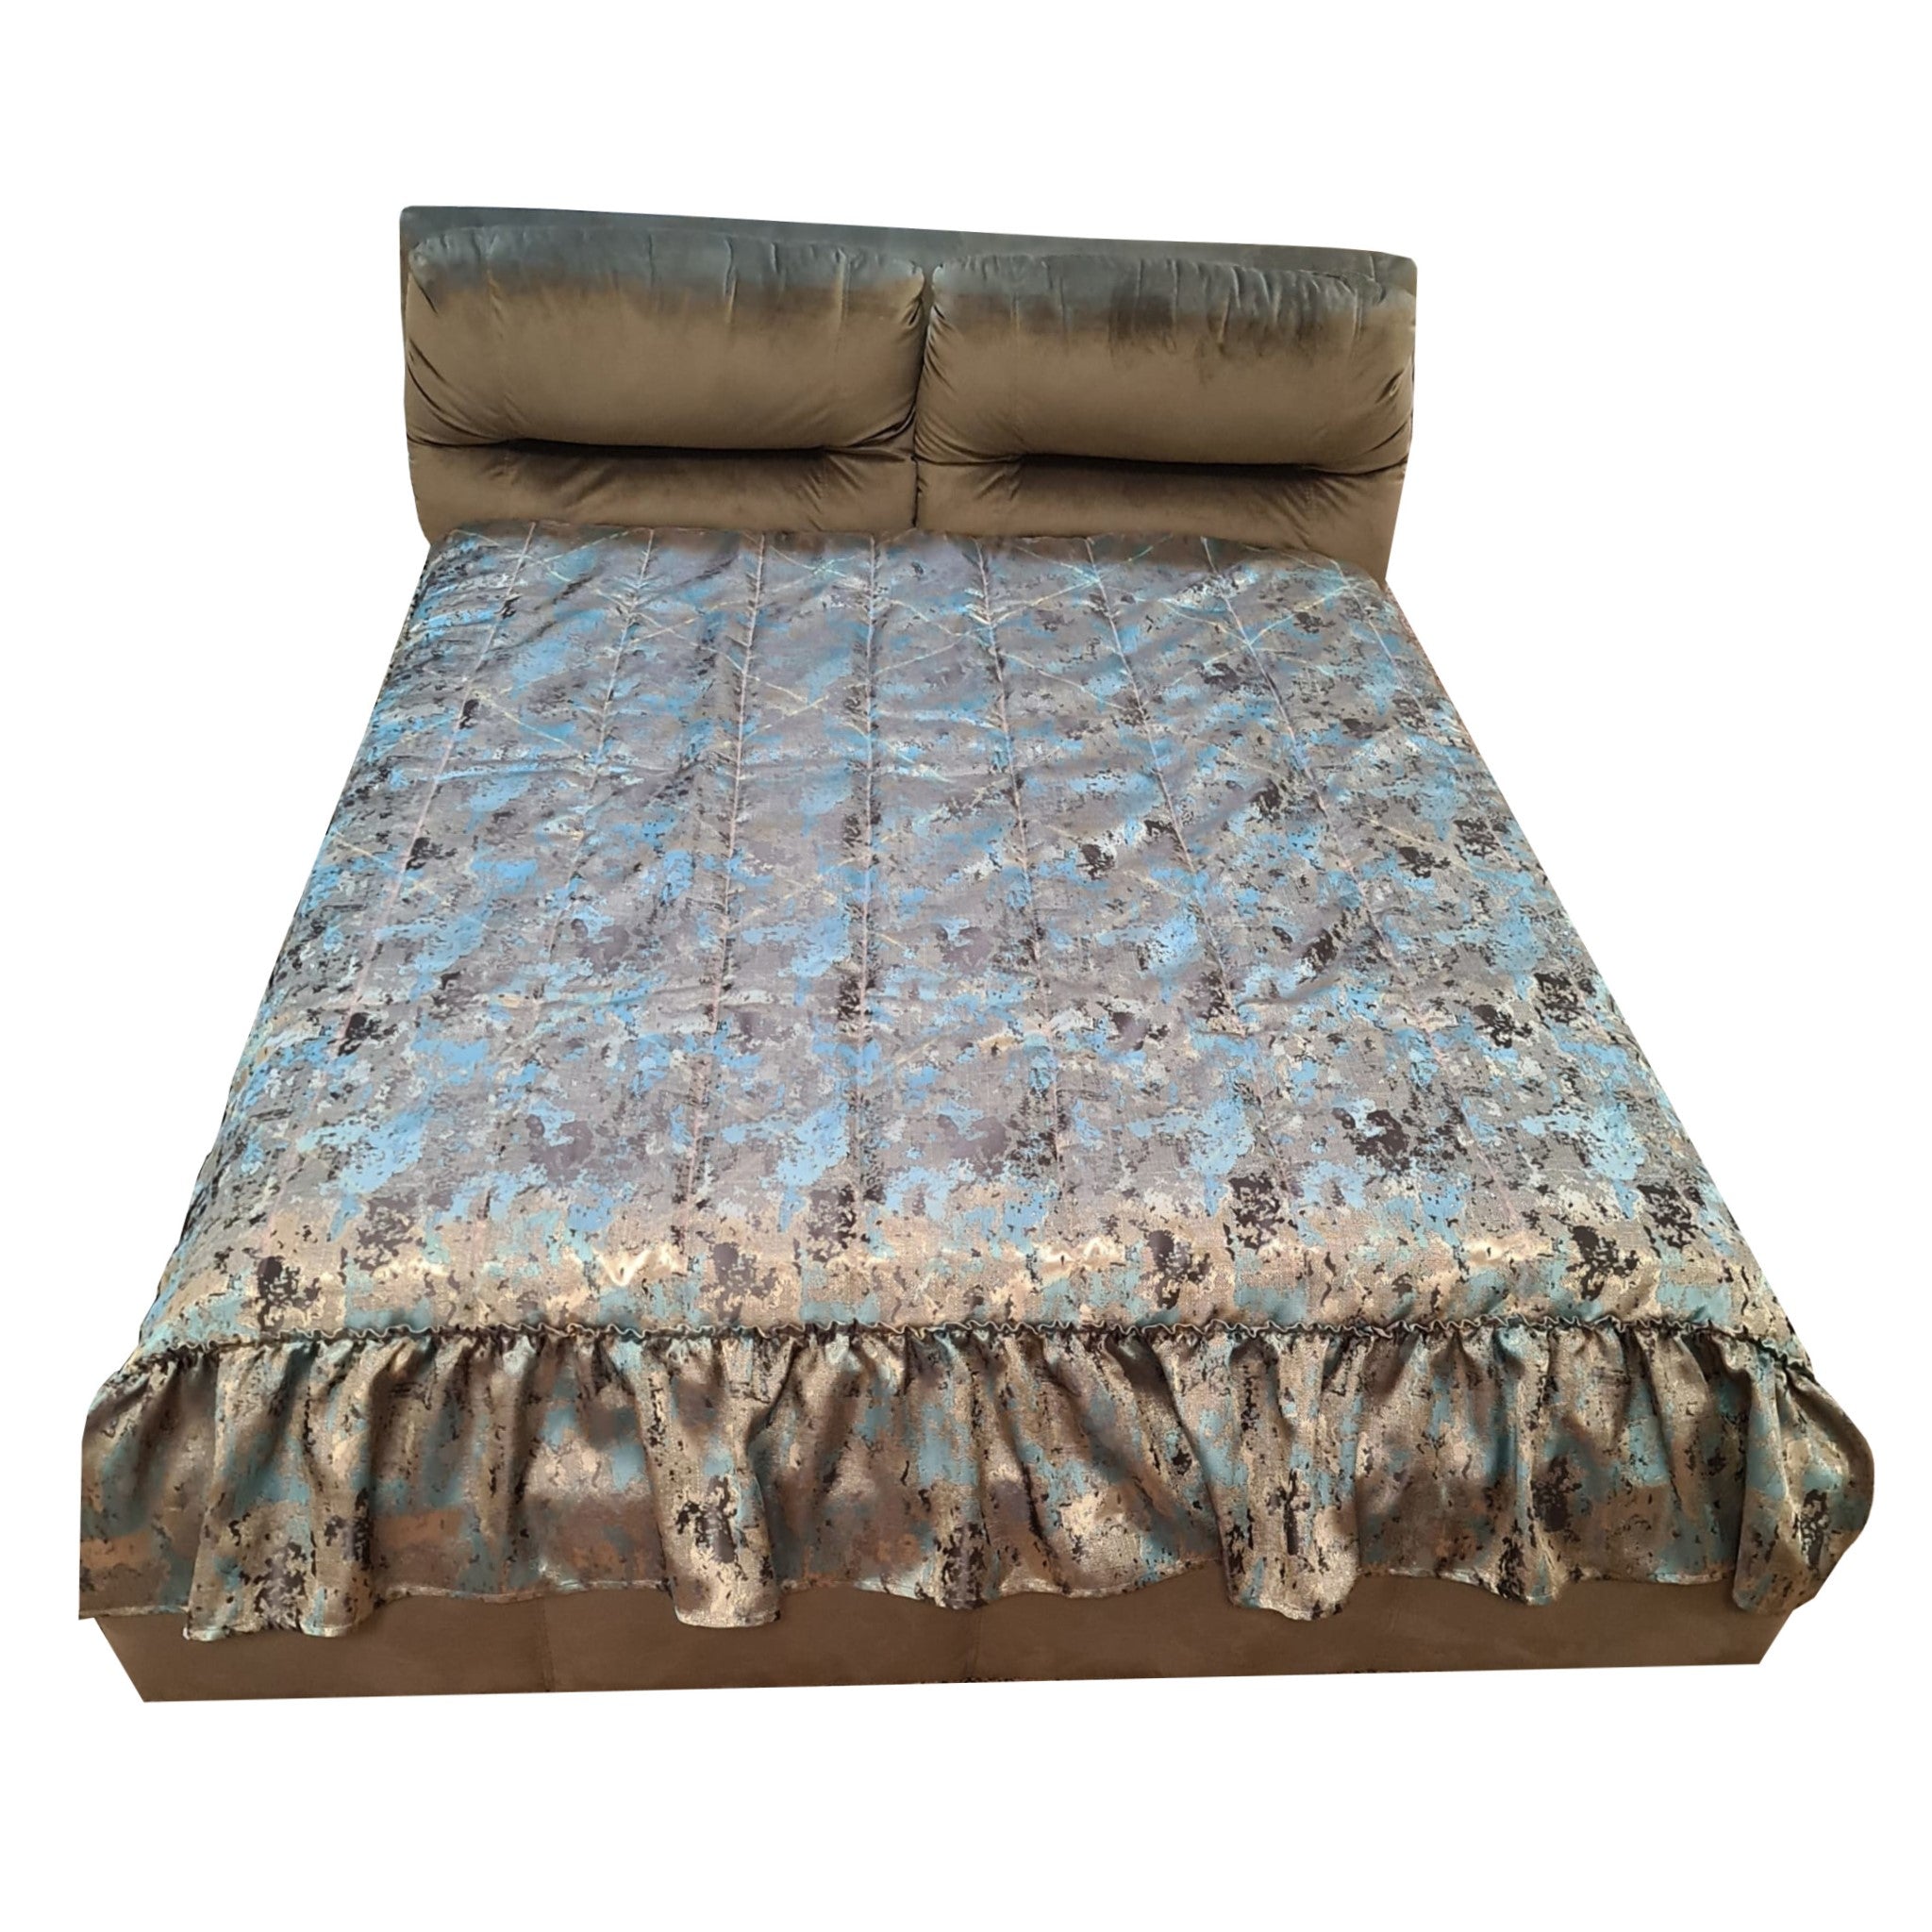 Cuvertură de pat 20365/4110, simplă, din mătase, cu model exclusivist, turcoaz / auriu, 1.40 m x 2 m